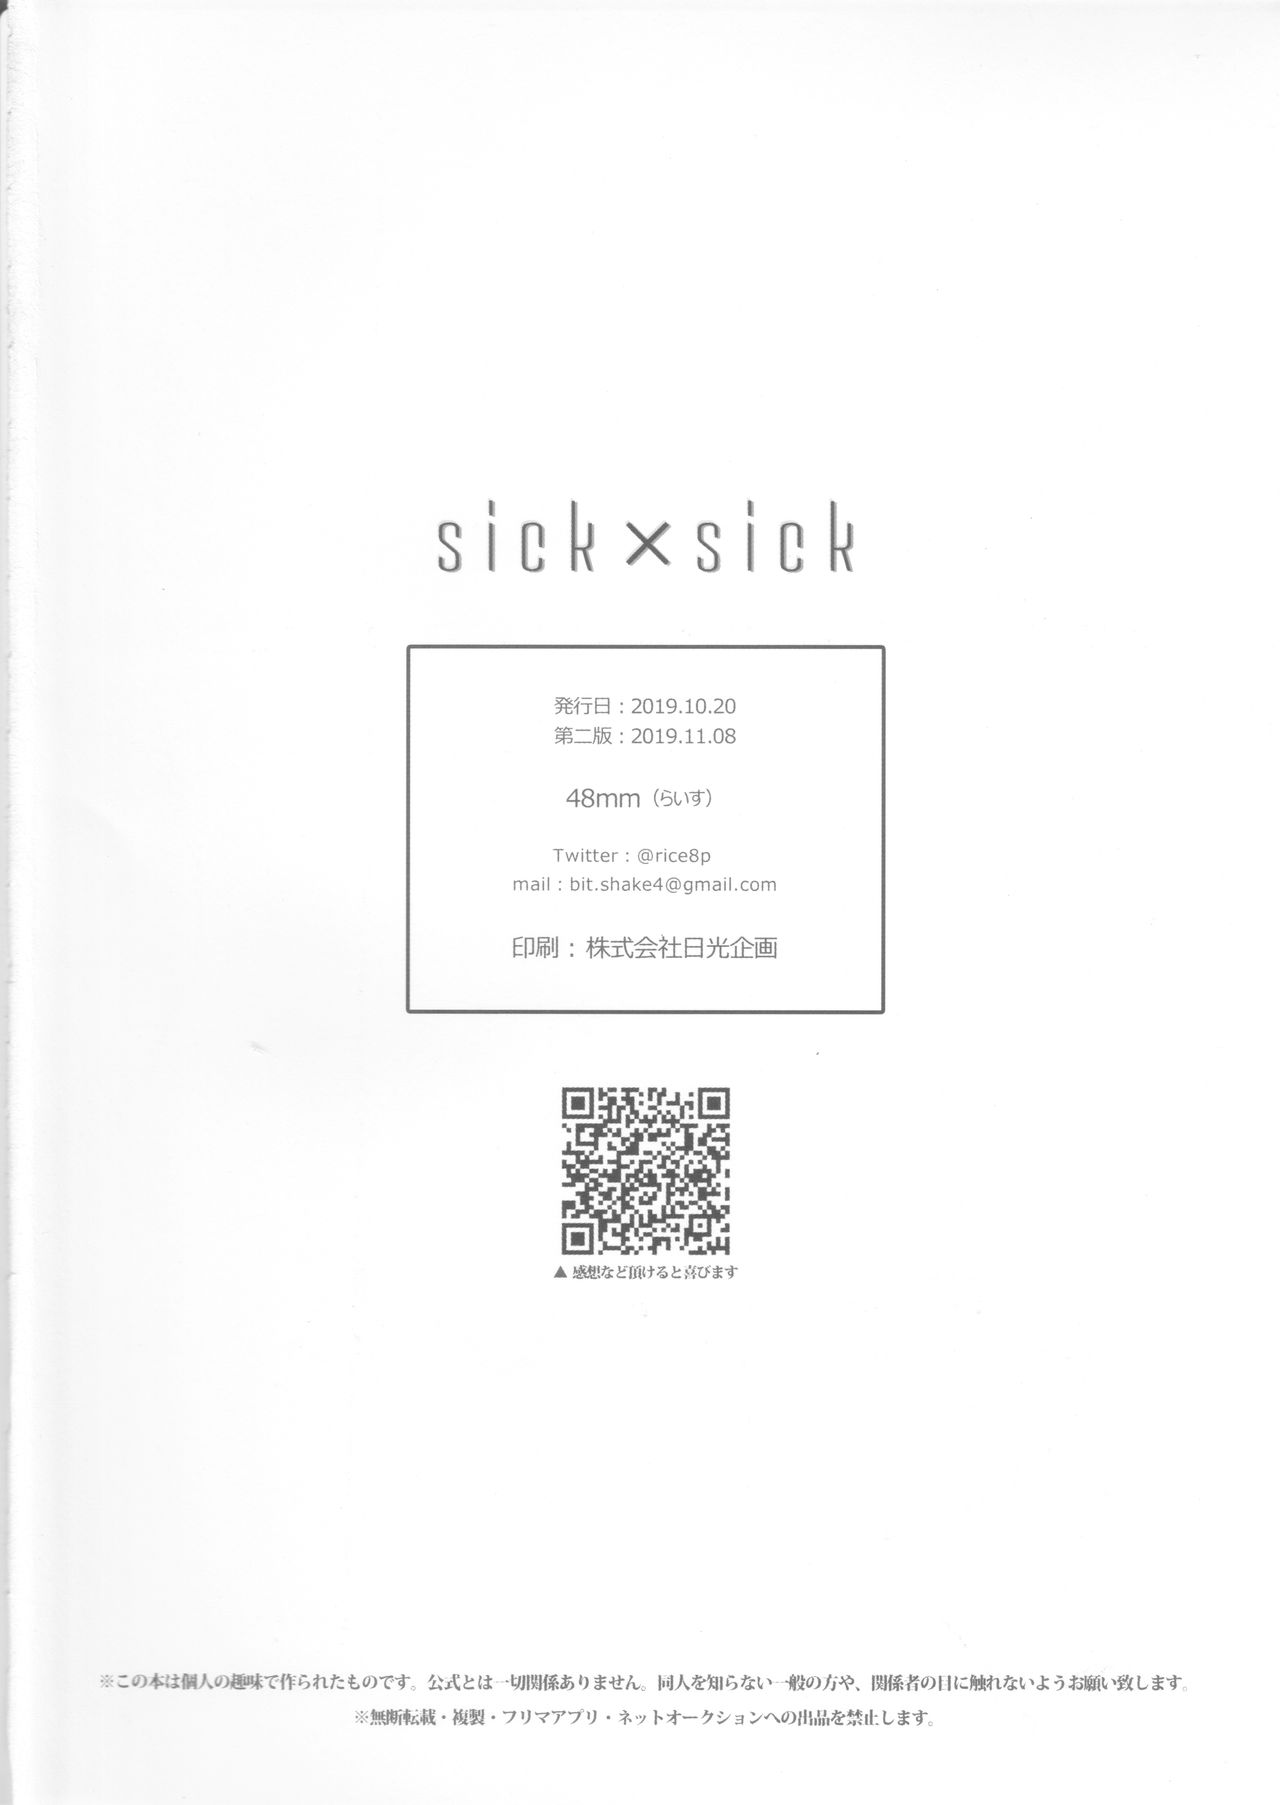 [48mm (らいす)] sick×sick (プロメア) [2019年11月8日]